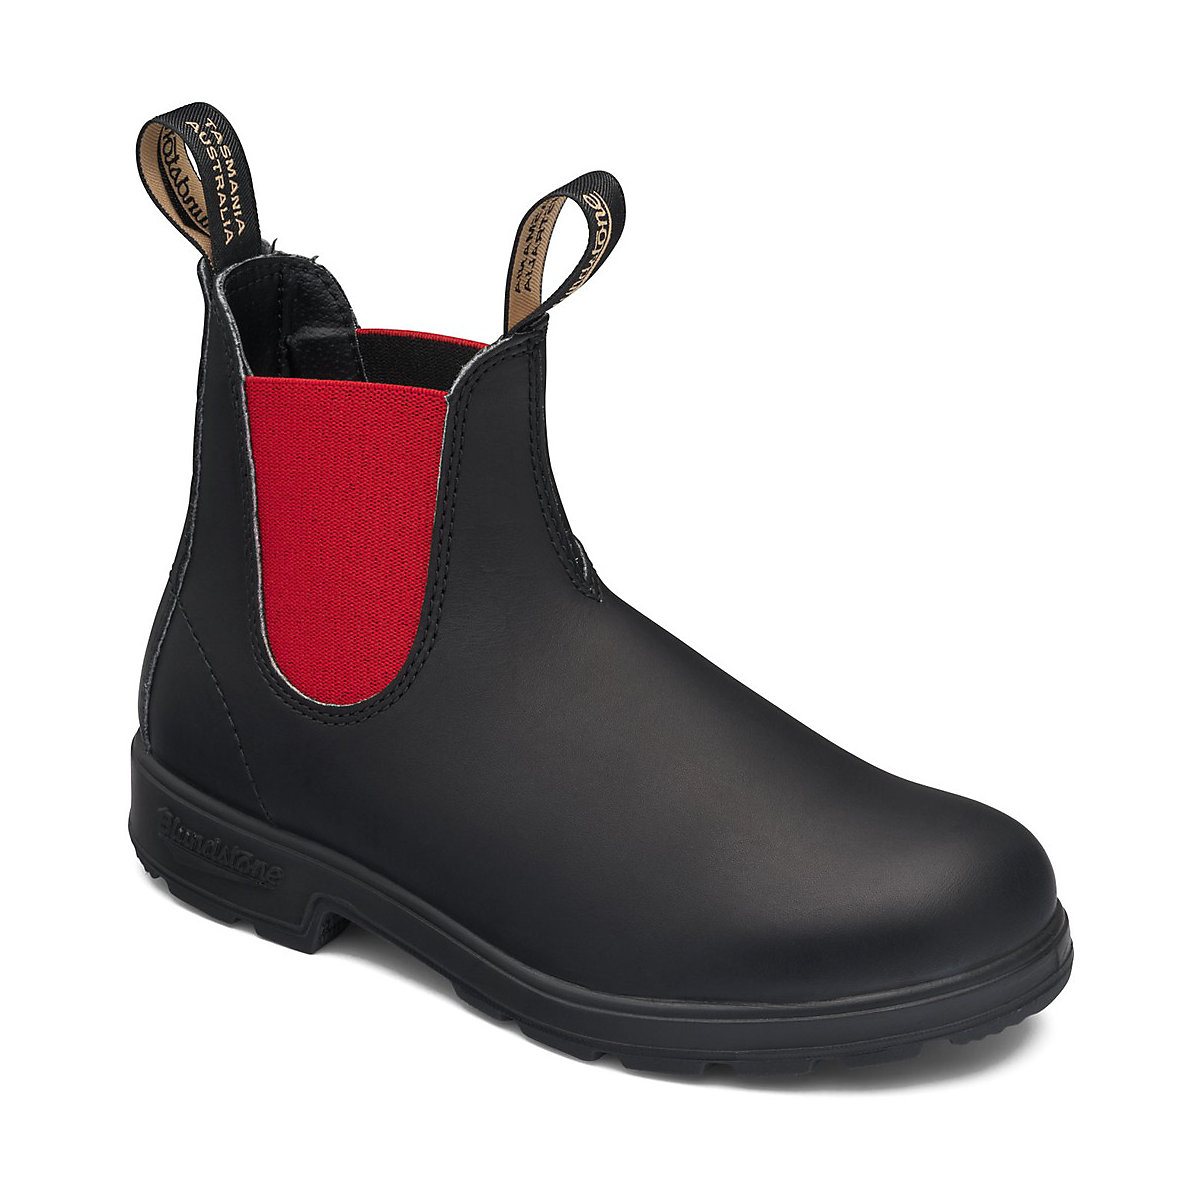 Blundstone Stiefel Boots #508 Voltan Leather Elastic (550 Series) Voltan Black/Red | Weite Größe schwarz/rot